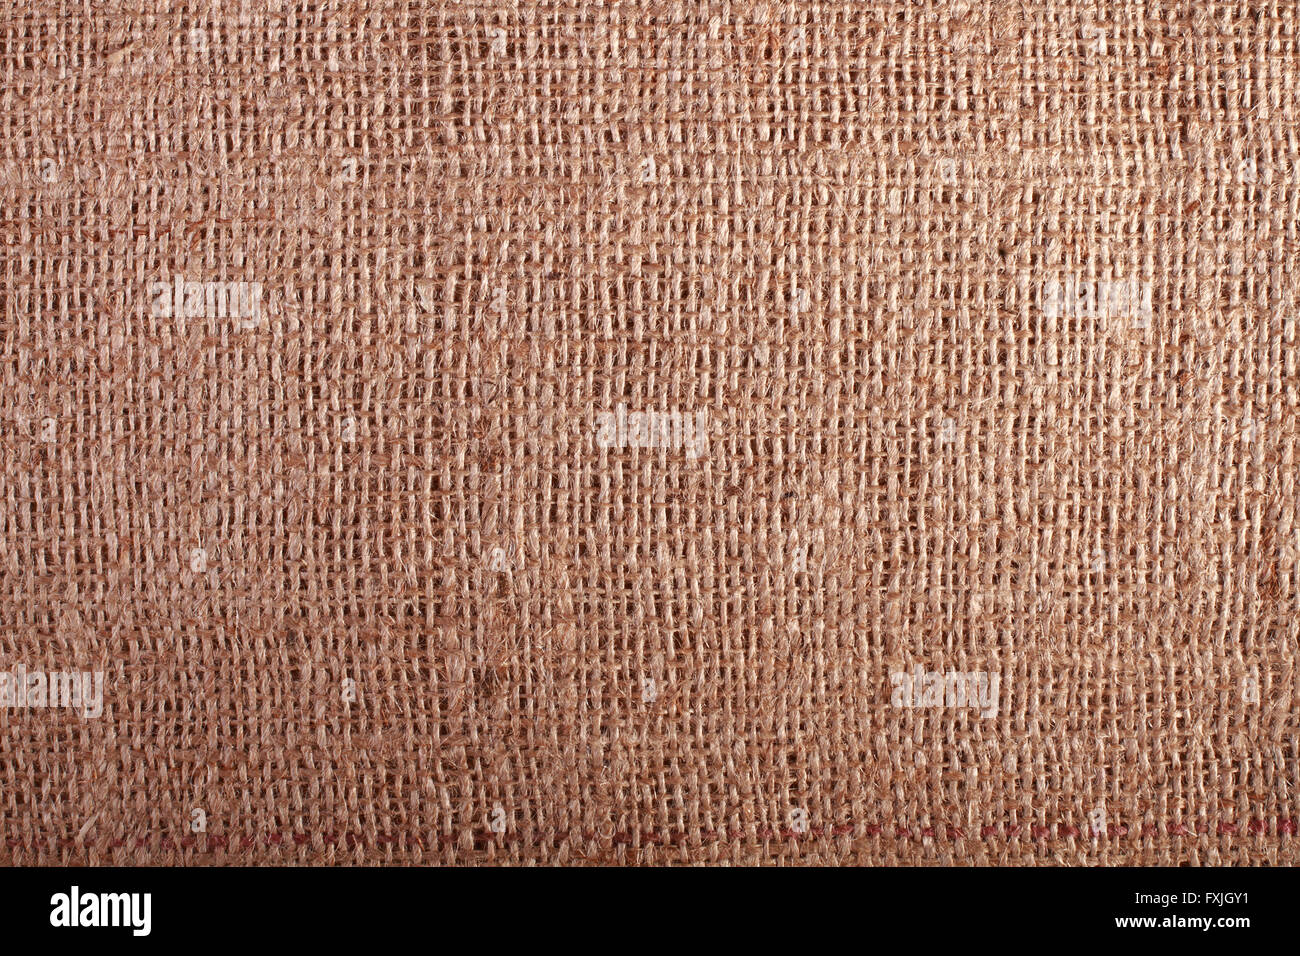 Fondo de arpillera tejido rugoso rústico con espacio de copia Foto de stock